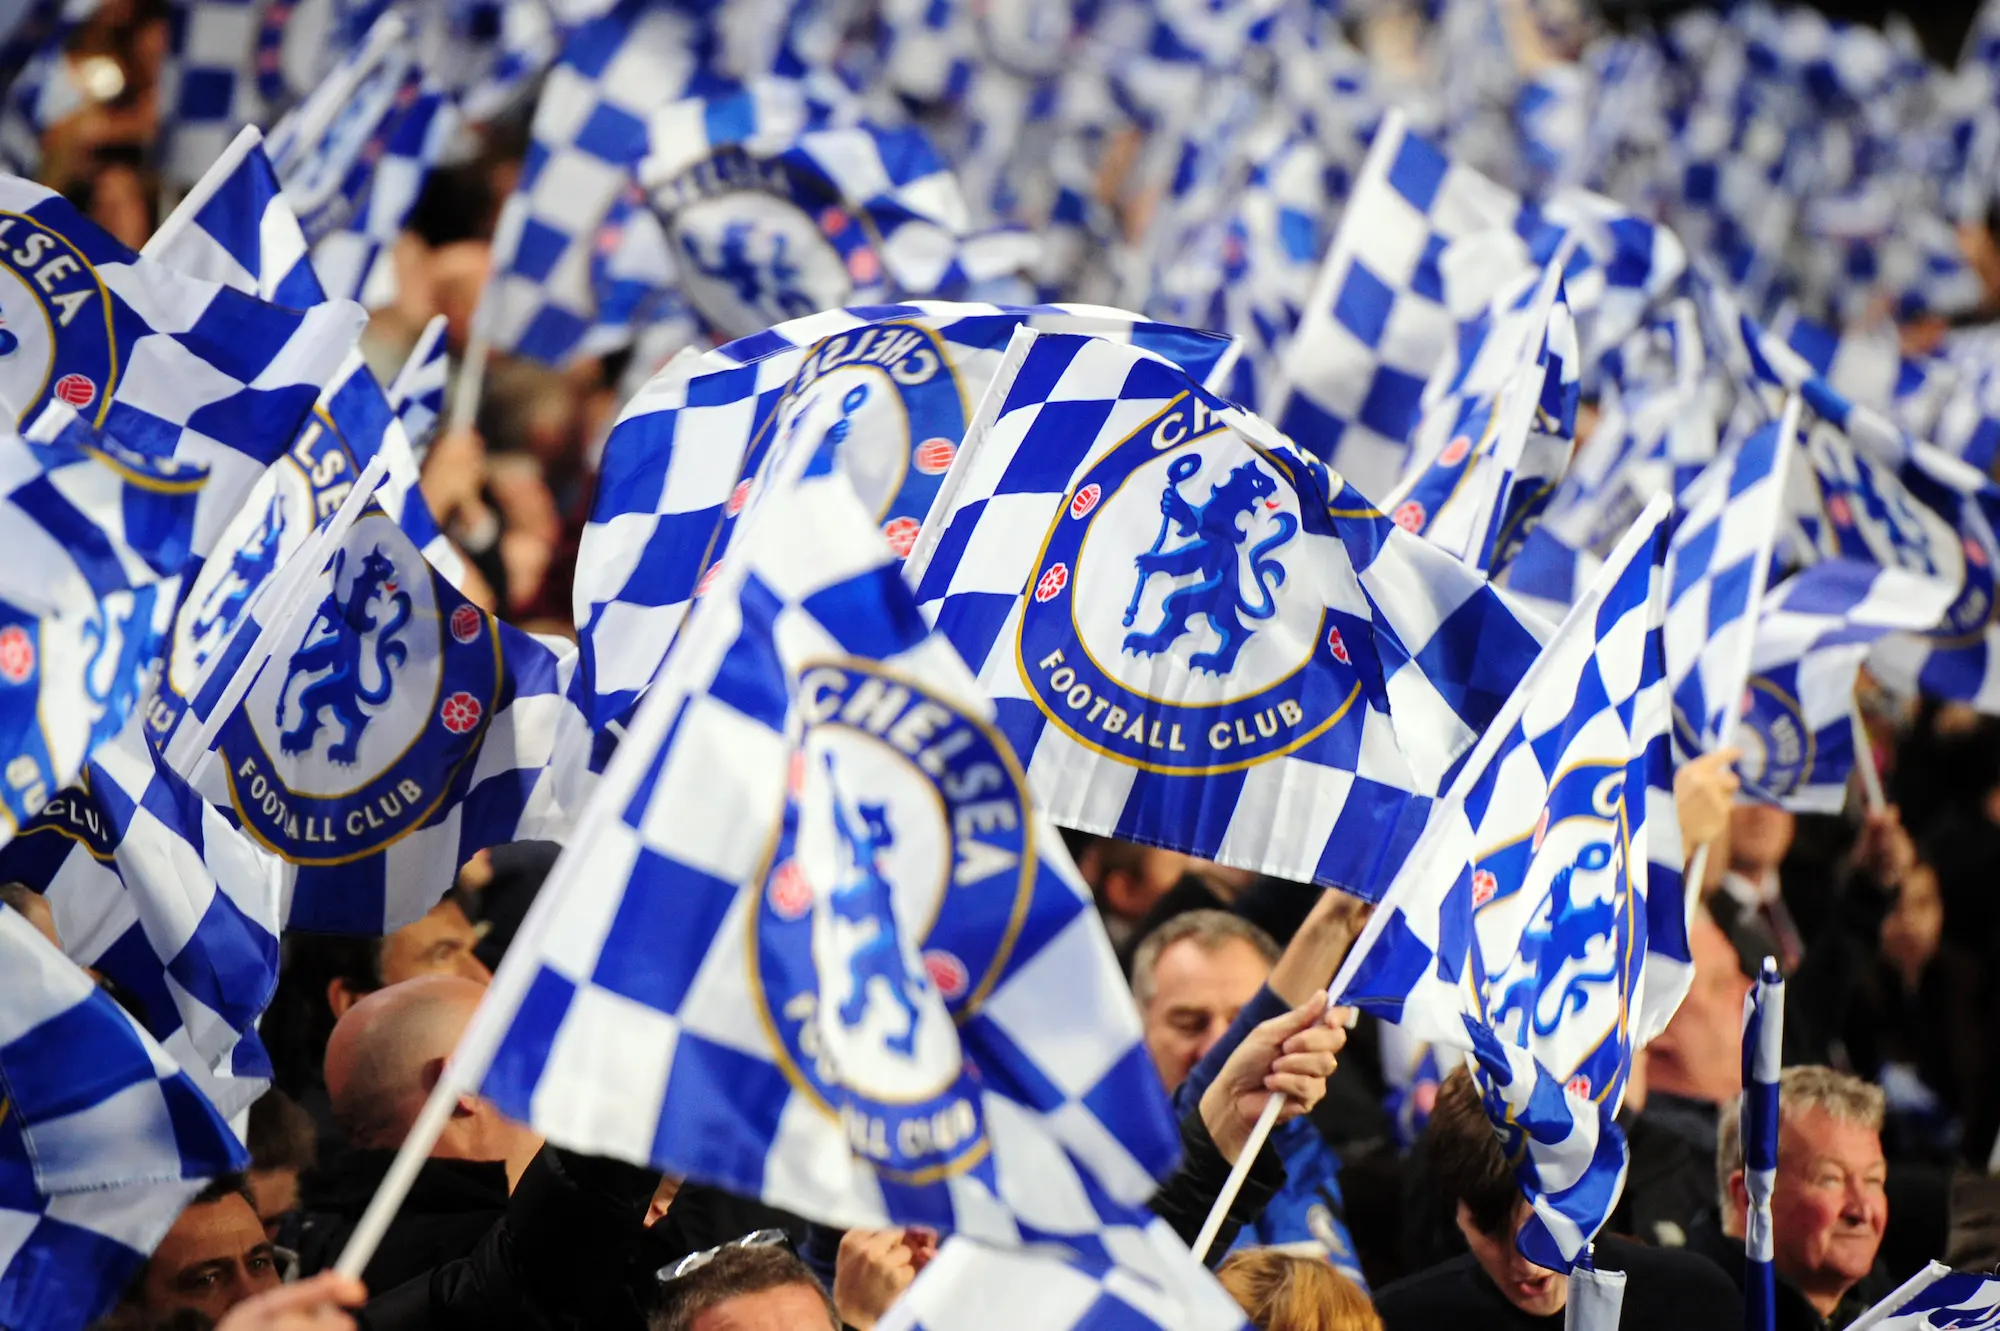 Chelsea souhaiterait organiser un match pour lutter contre l’antisémitisme